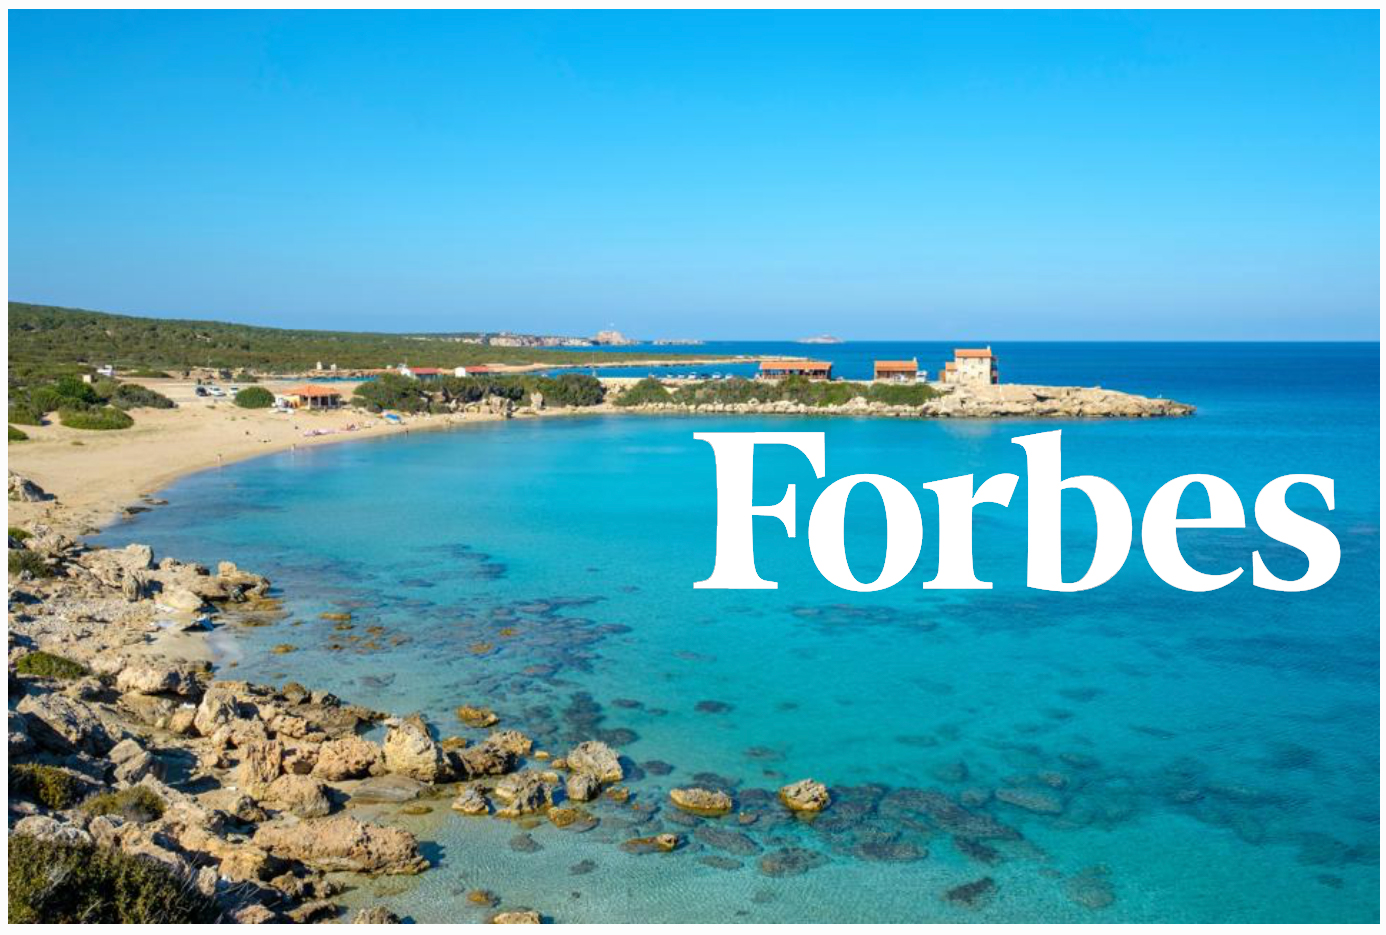 Η FORBES ανέφερε τη Βόρεια Κύπρο ως τη χώρα που προσφέρει την καλύτερη ευκαιρία στην ακτή το 2021